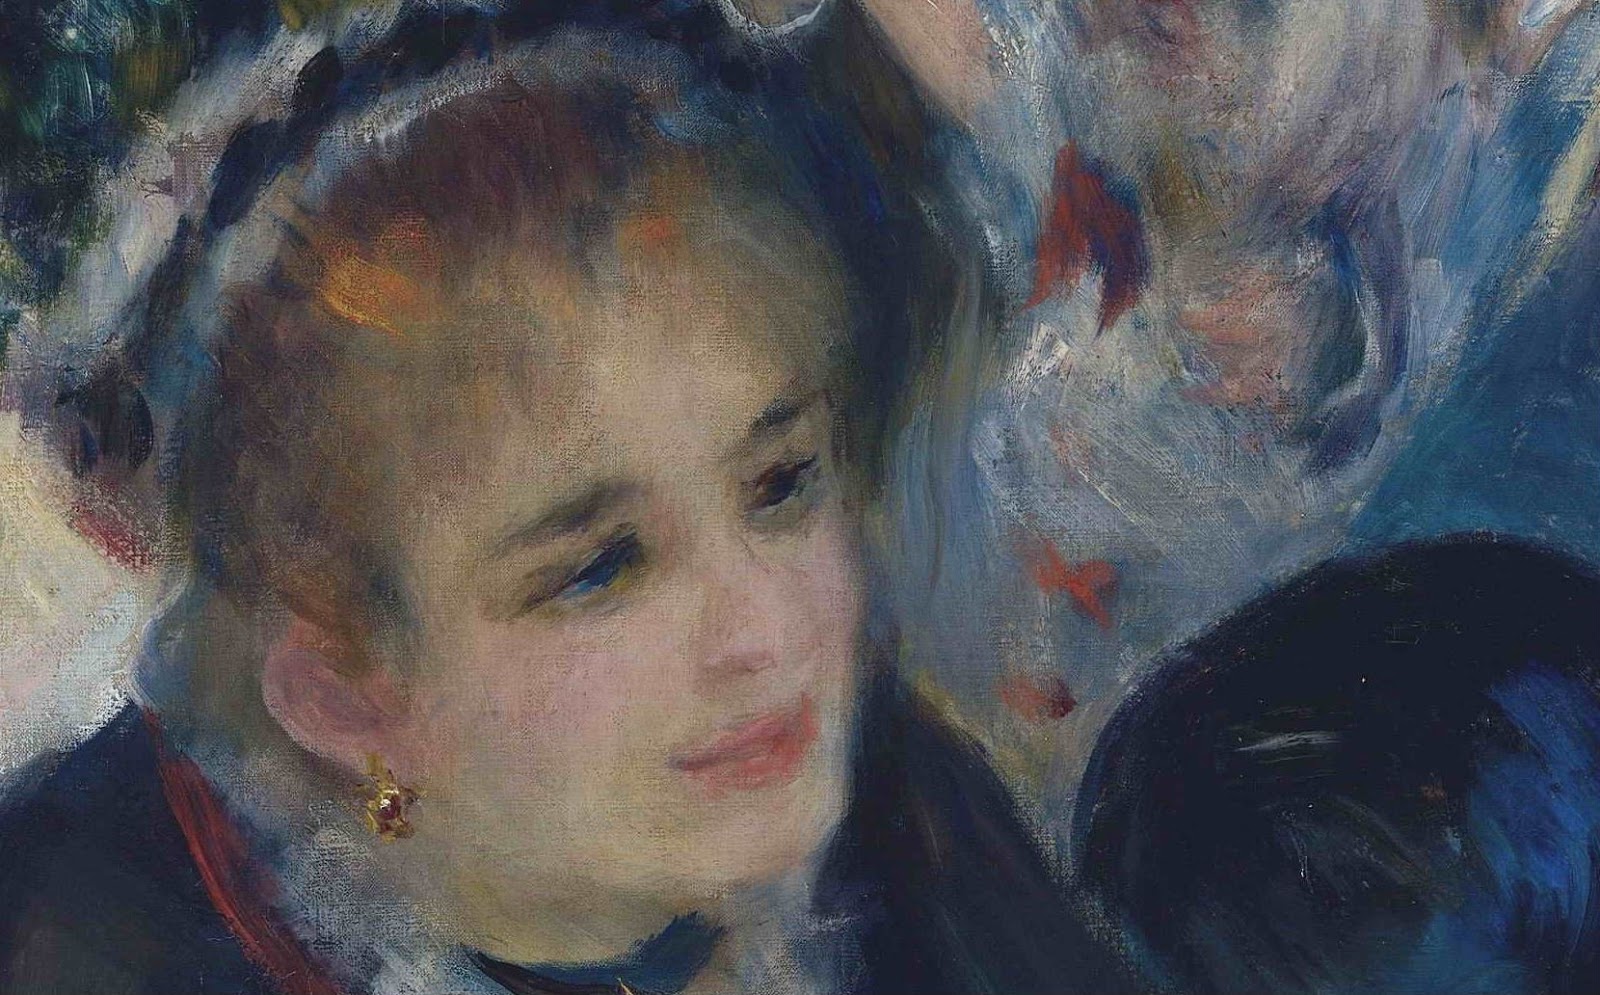 Pierre+Auguste+Renoir-1841-1-19 (422).JPG